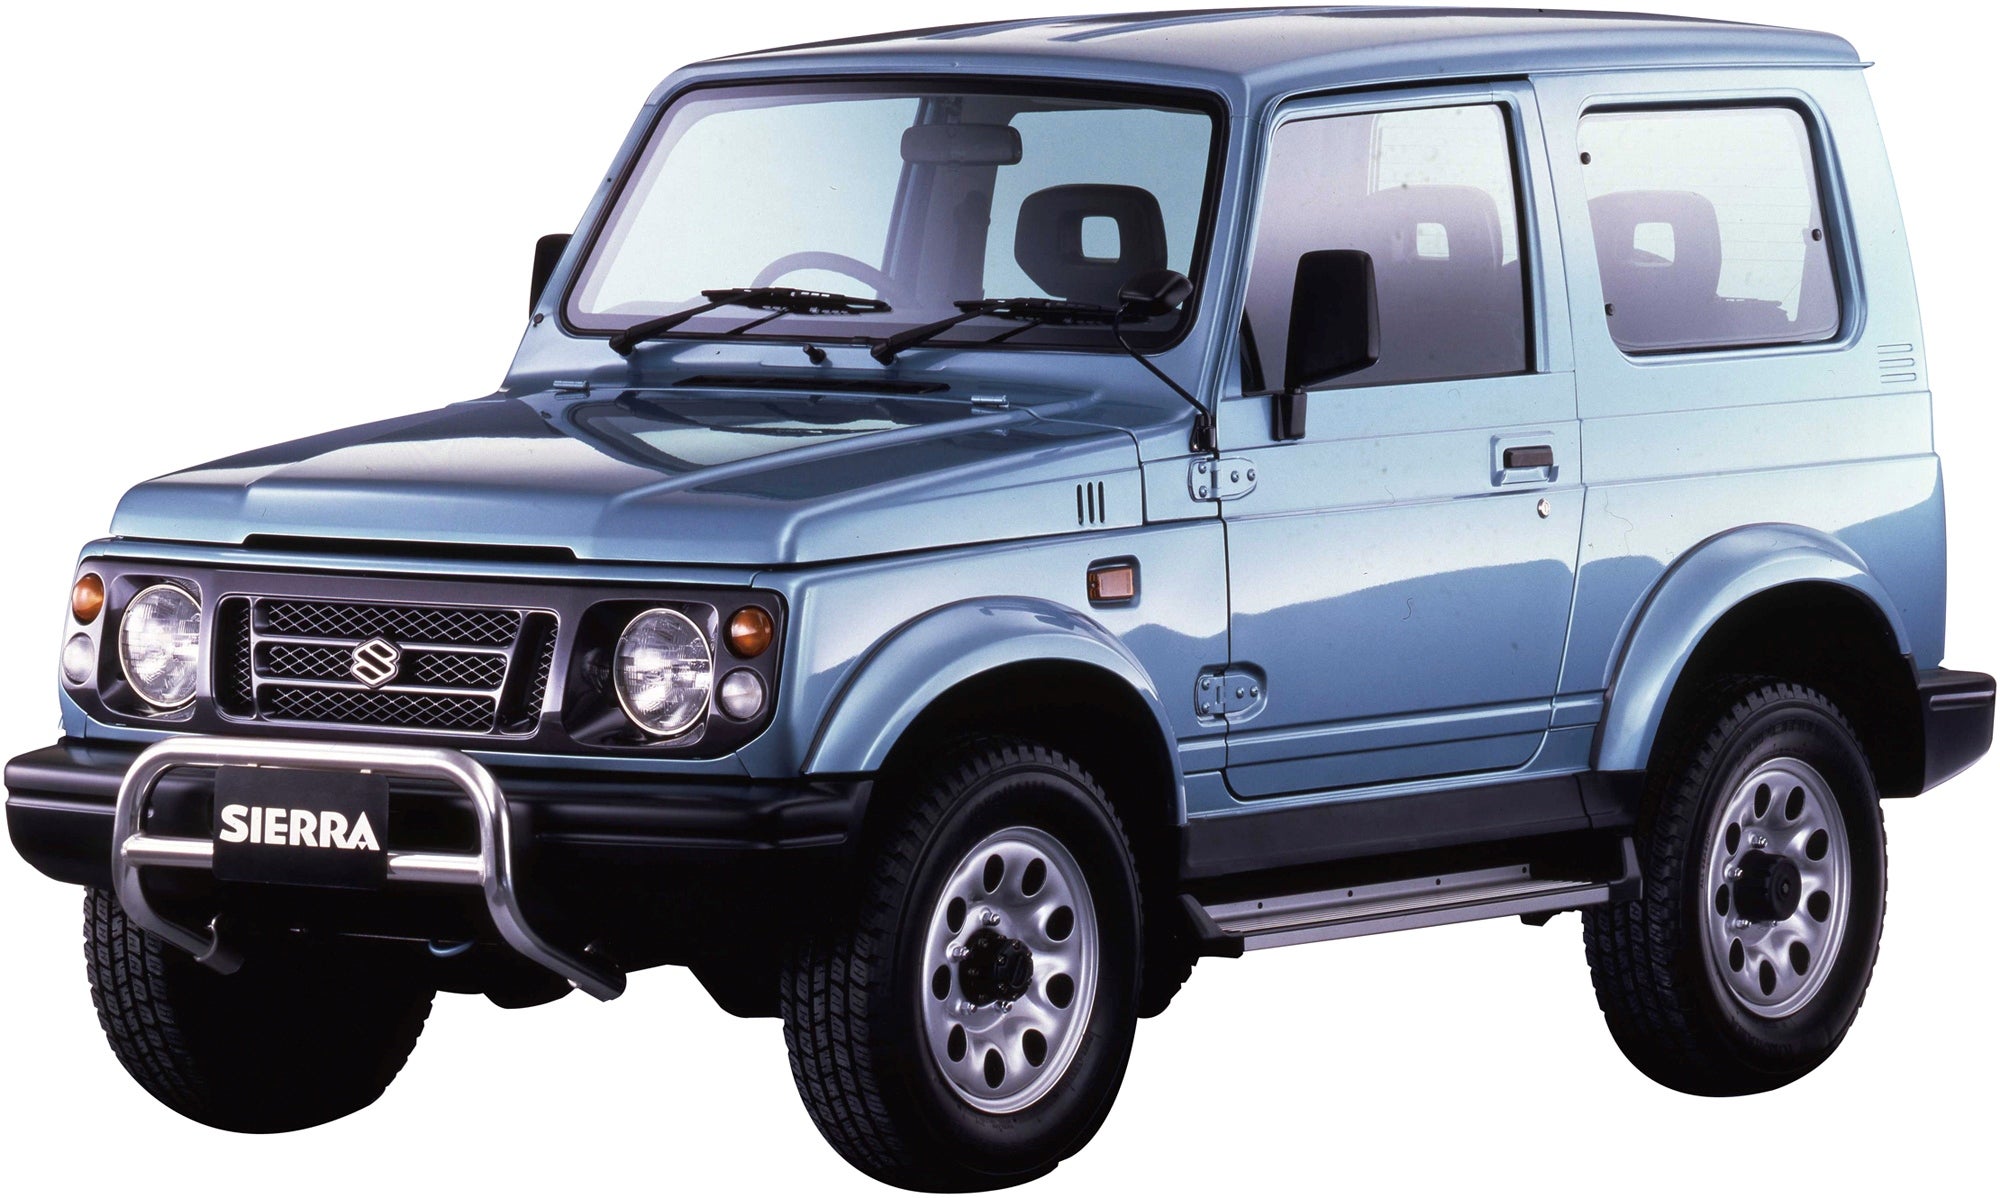 小型車規格のジムニーとして1.3Lエンジンを搭載するシエラ。初代は1993年にデビュー